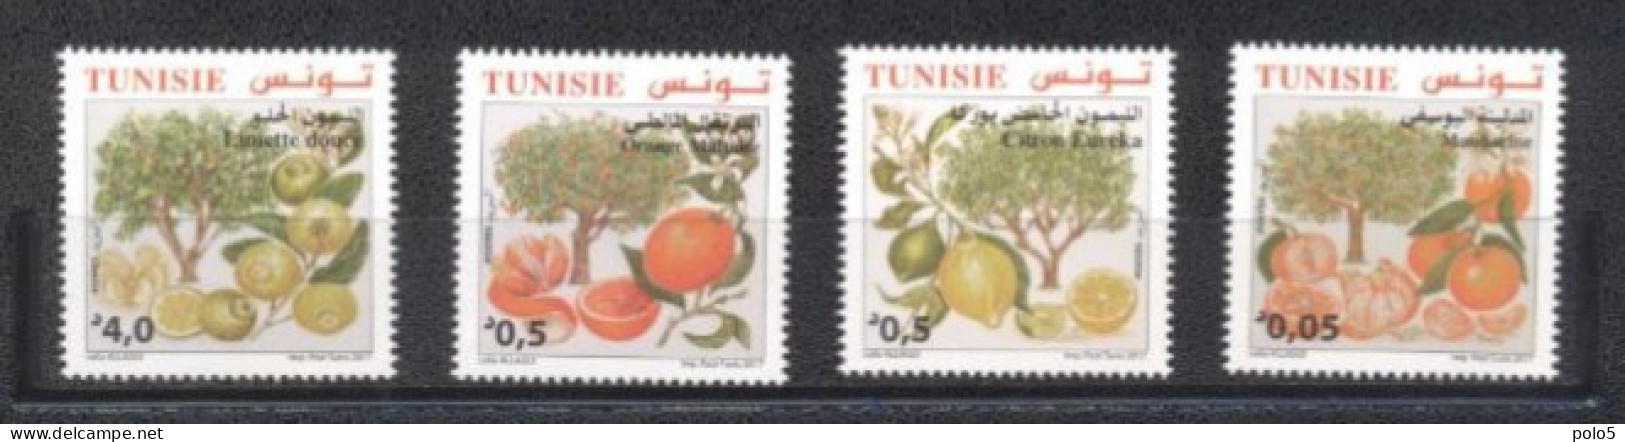 Tunisie 2017- Espèces D'agrumes De Tunisie Série (4v) - Tunesien (1956-...)